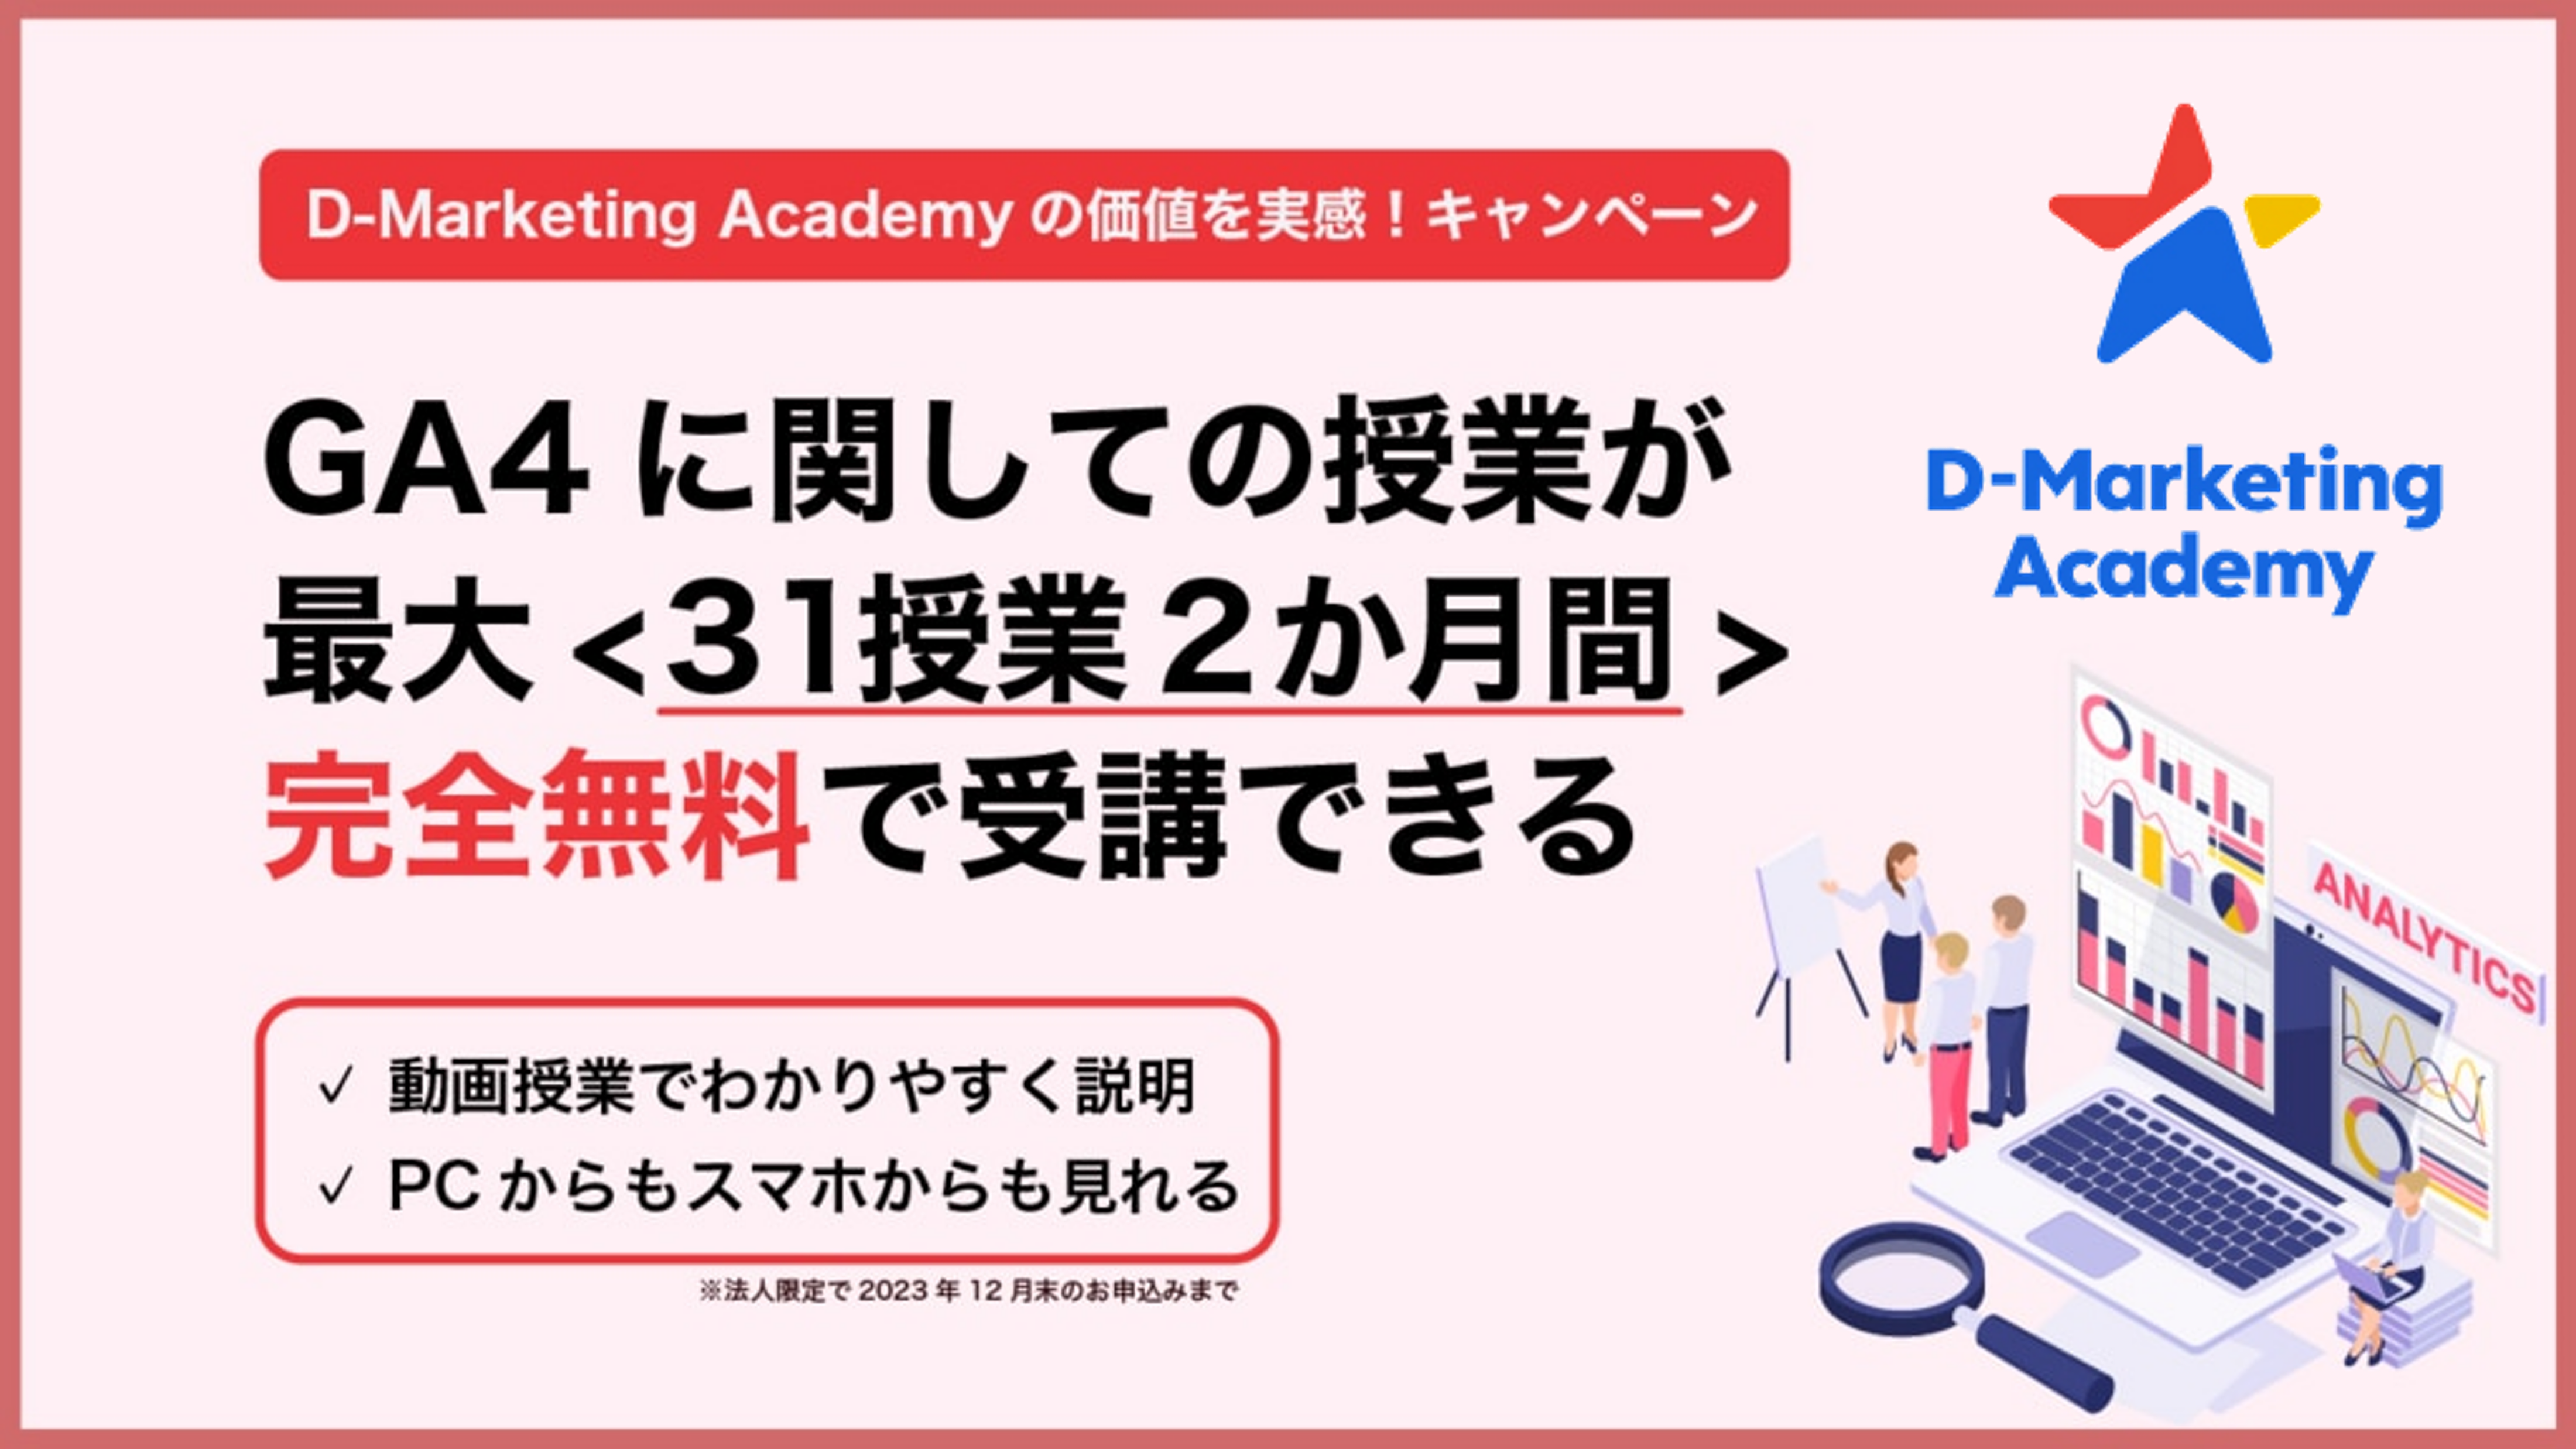 D-Marketing Academy、初心者でも「GA4」が使えるようになるWeb授業が無料で受けられる「GA4講座無料キャンペーン」の提供を開始